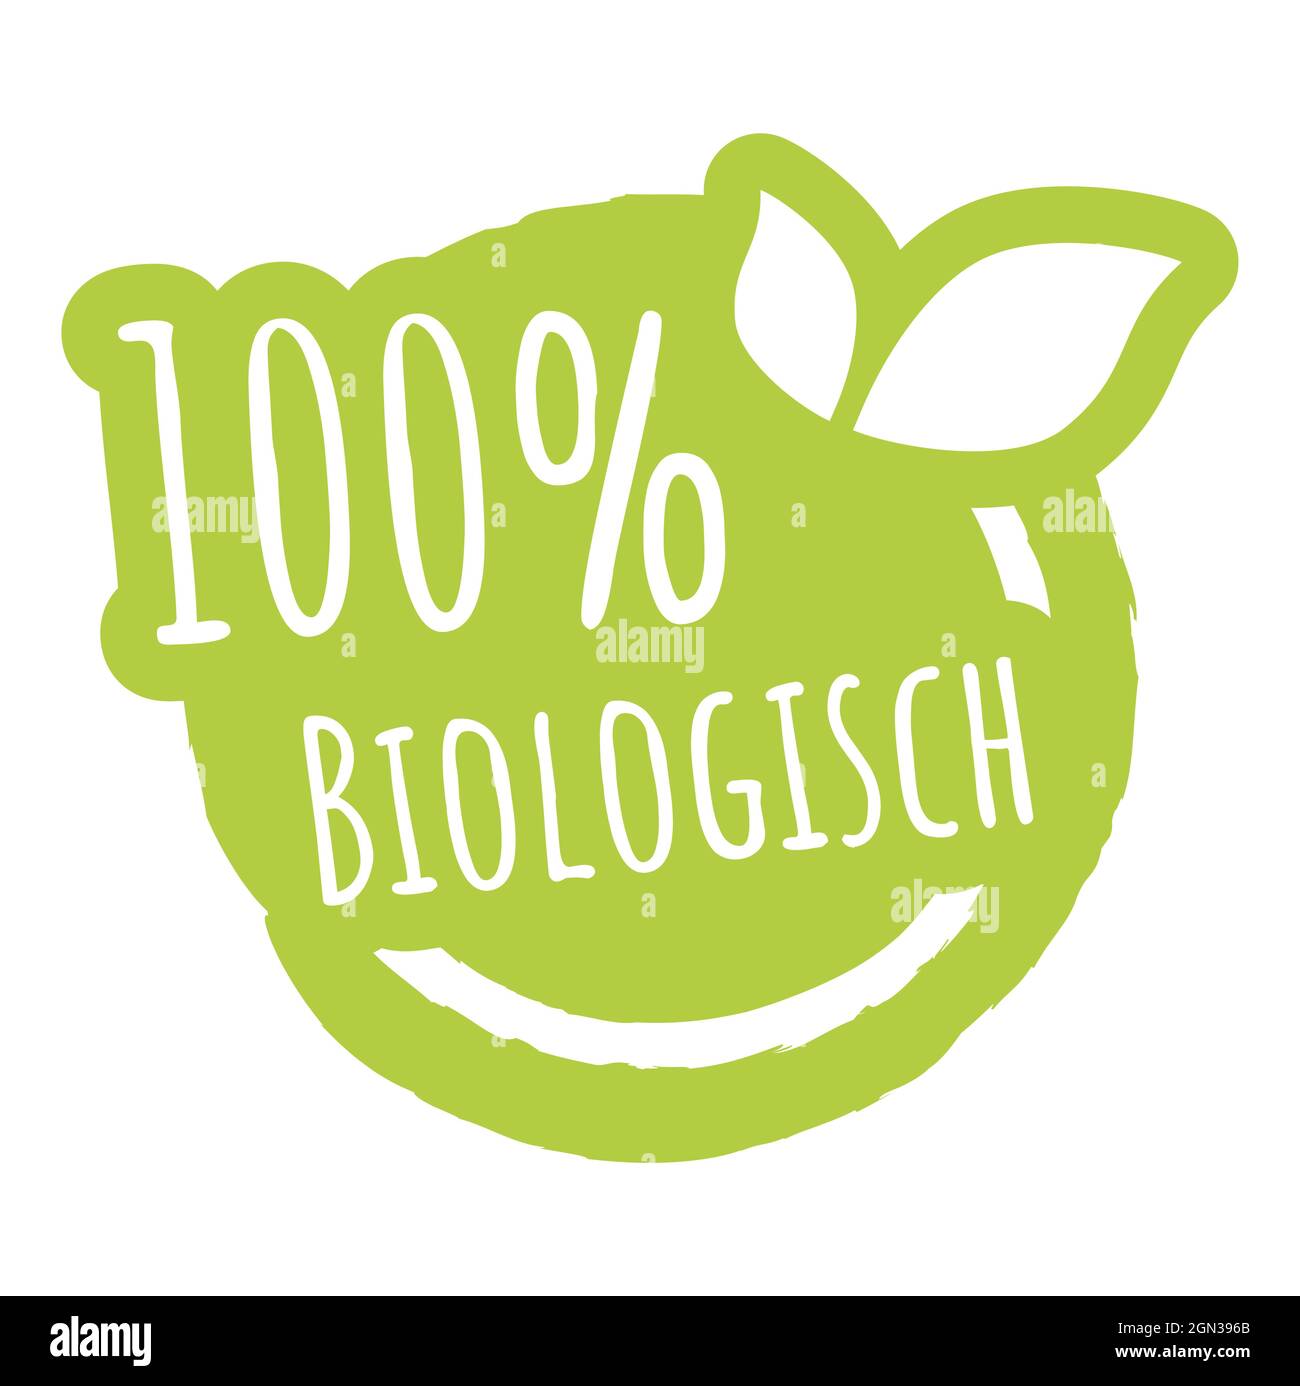 fichier vectoriel eps timbre rond vert moderne avec feuilles, texte blanc 100% biologique (allemand) Illustration de Vecteur